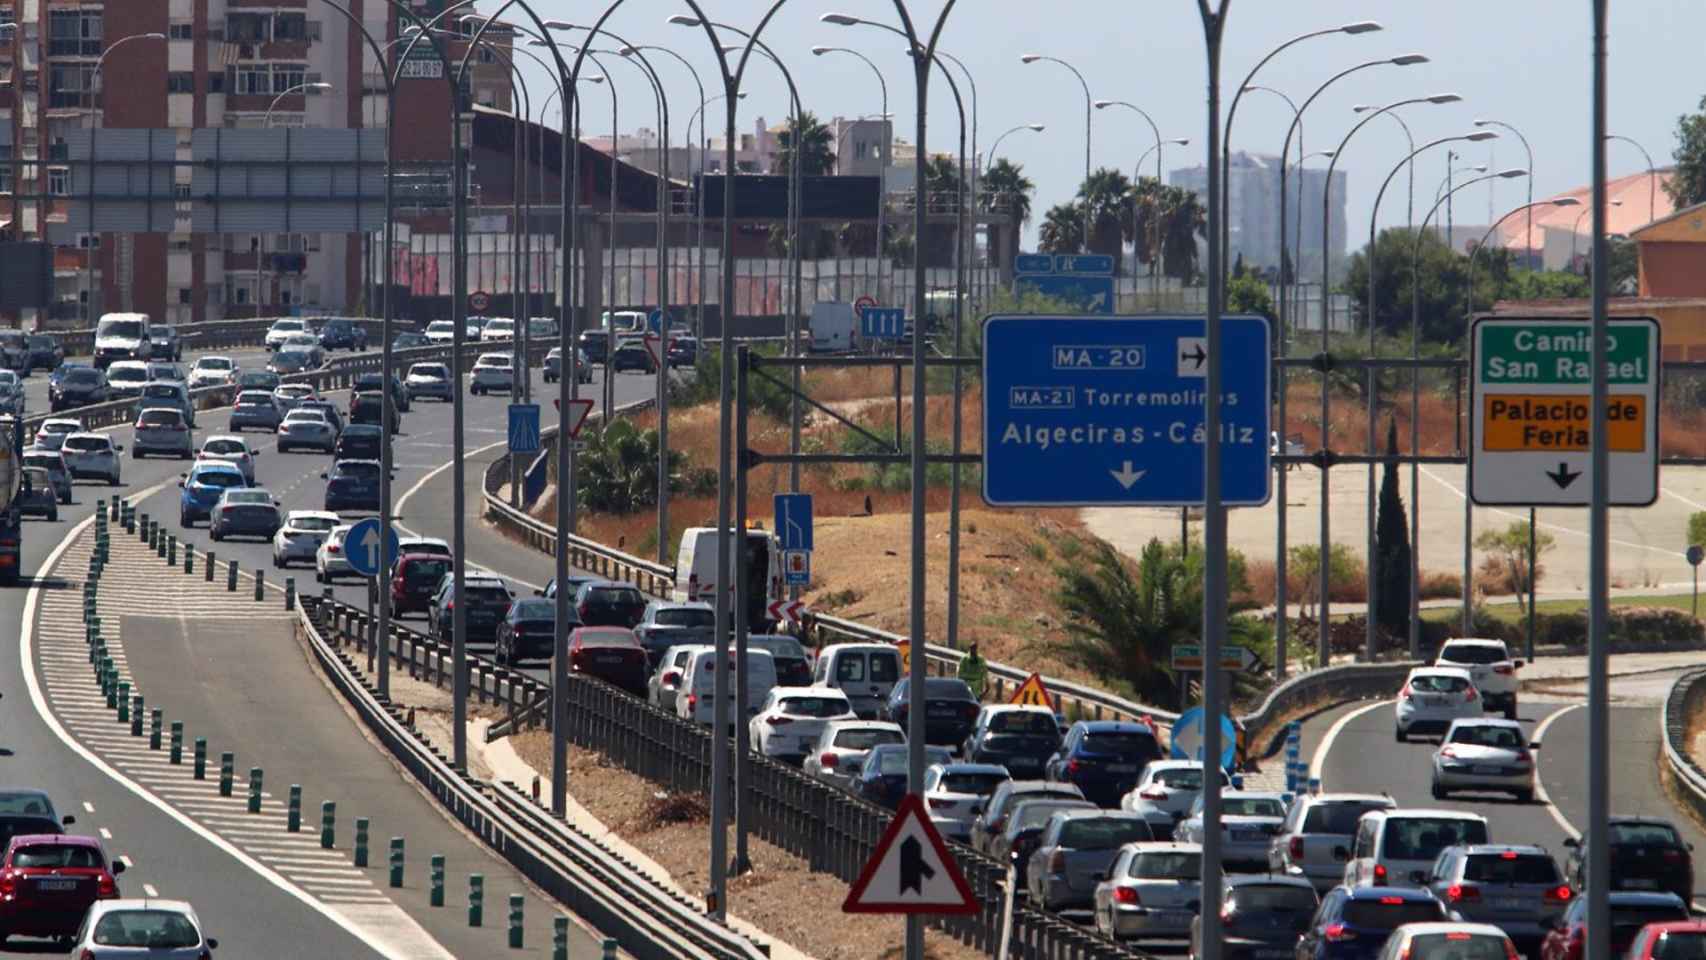 El verano deja seis fallecidos en accidentes de tráfico y casi 4 M de desplazamientos en Málaga